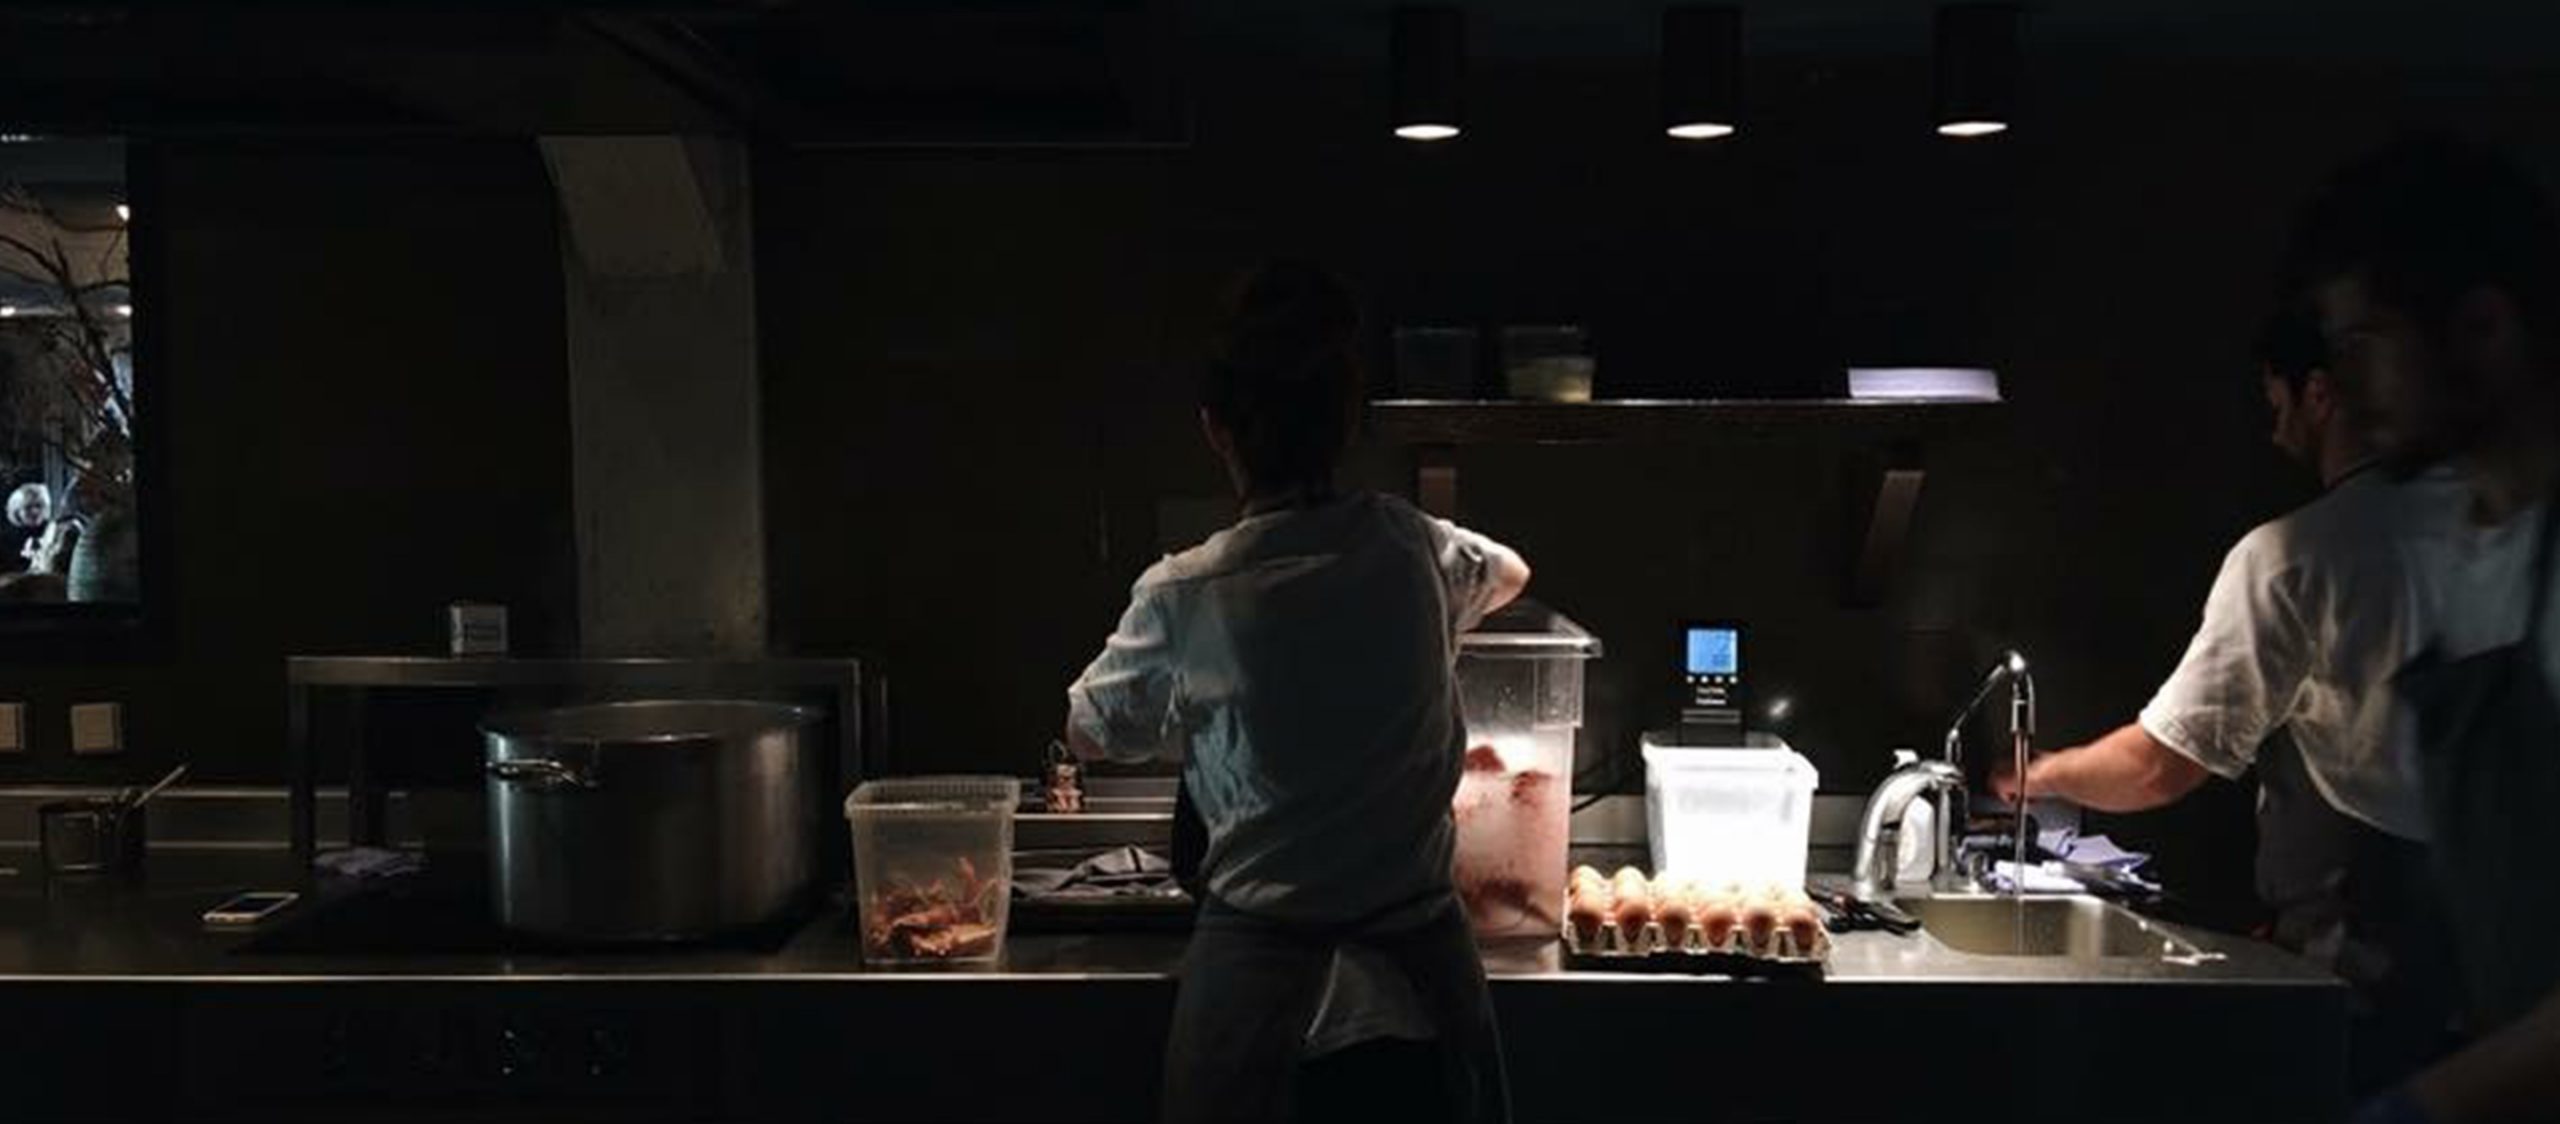 เรื่องเล่าหลังครัว noma ร้านอาหารระดับโลกใน Copenhagen